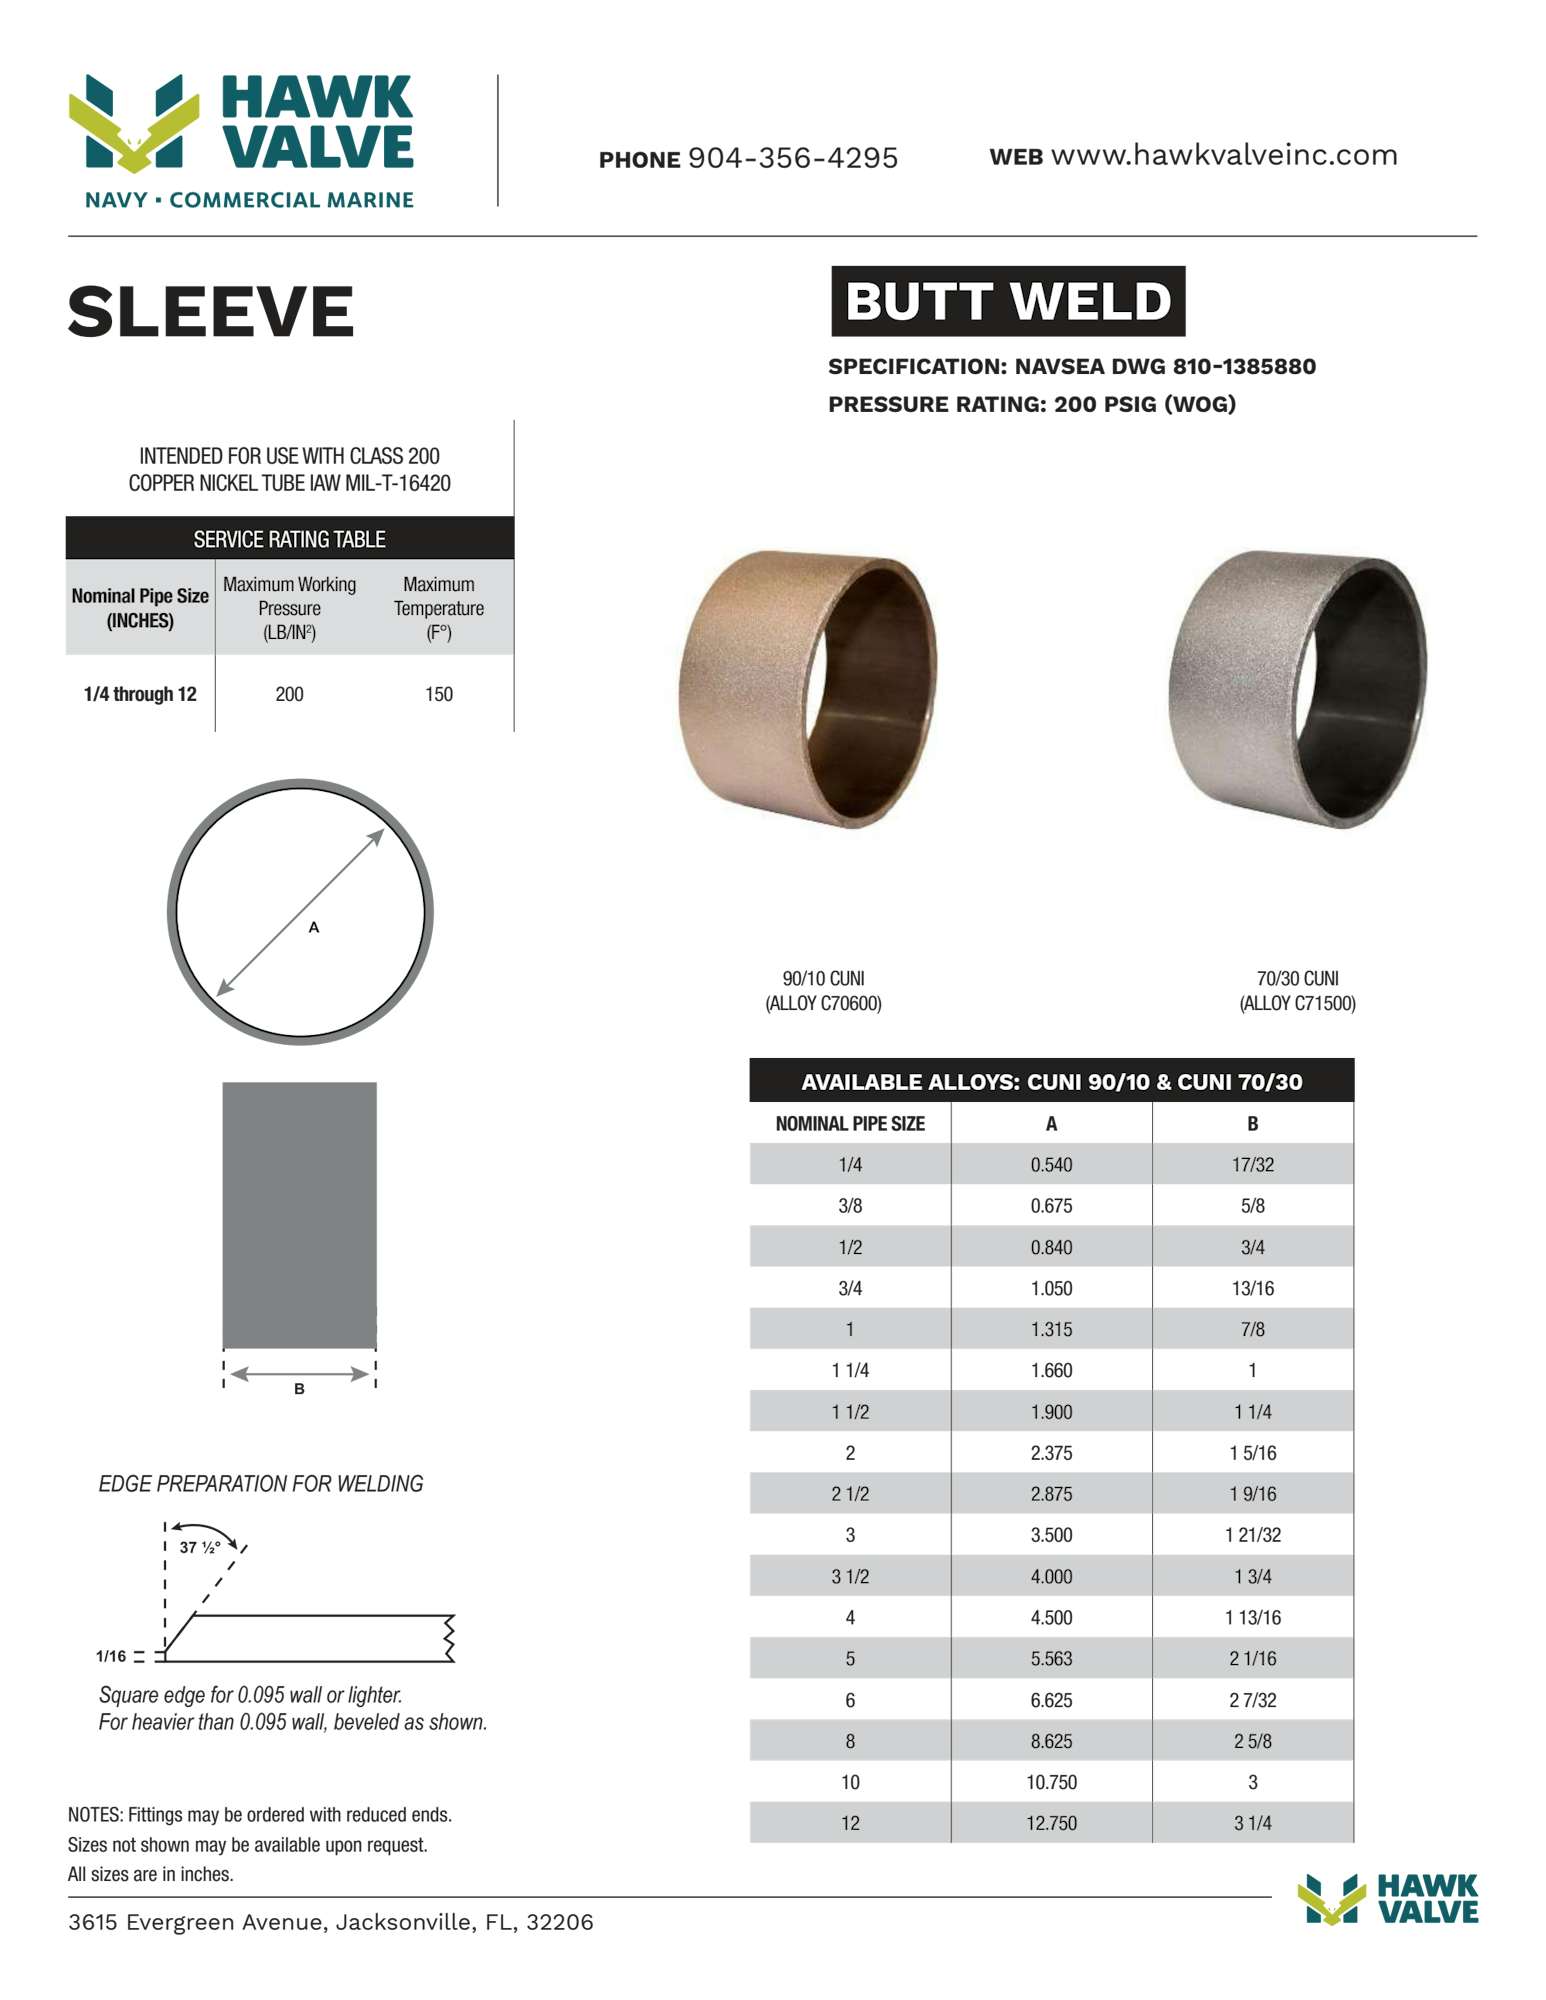 BUTT-WELD-SLEEVE.pdf